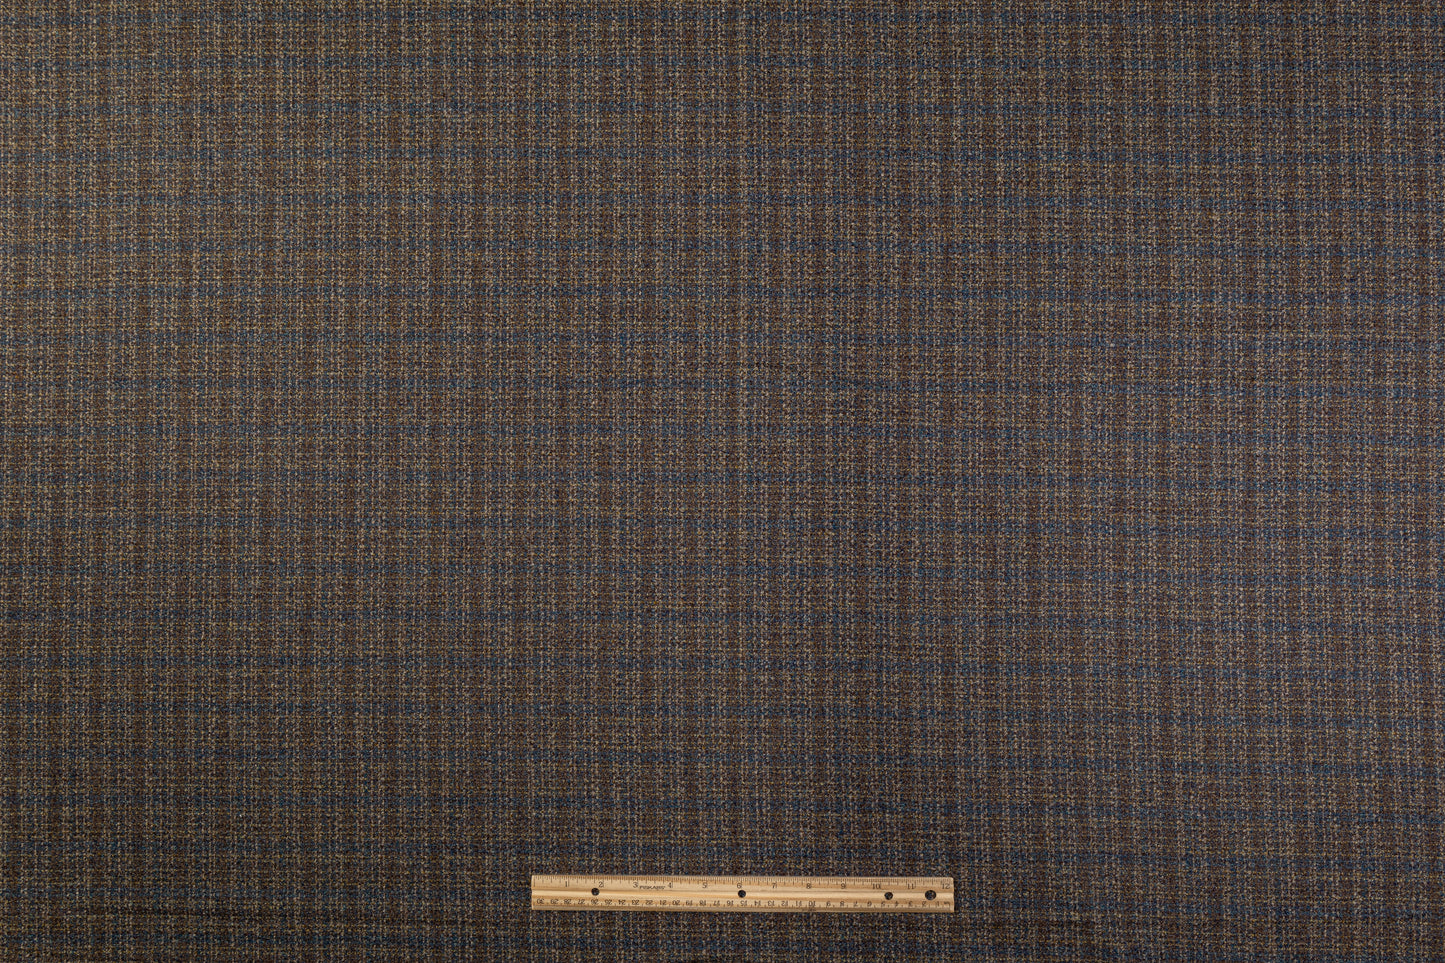 Checked Italian Wool Tweed - Blue / Brown